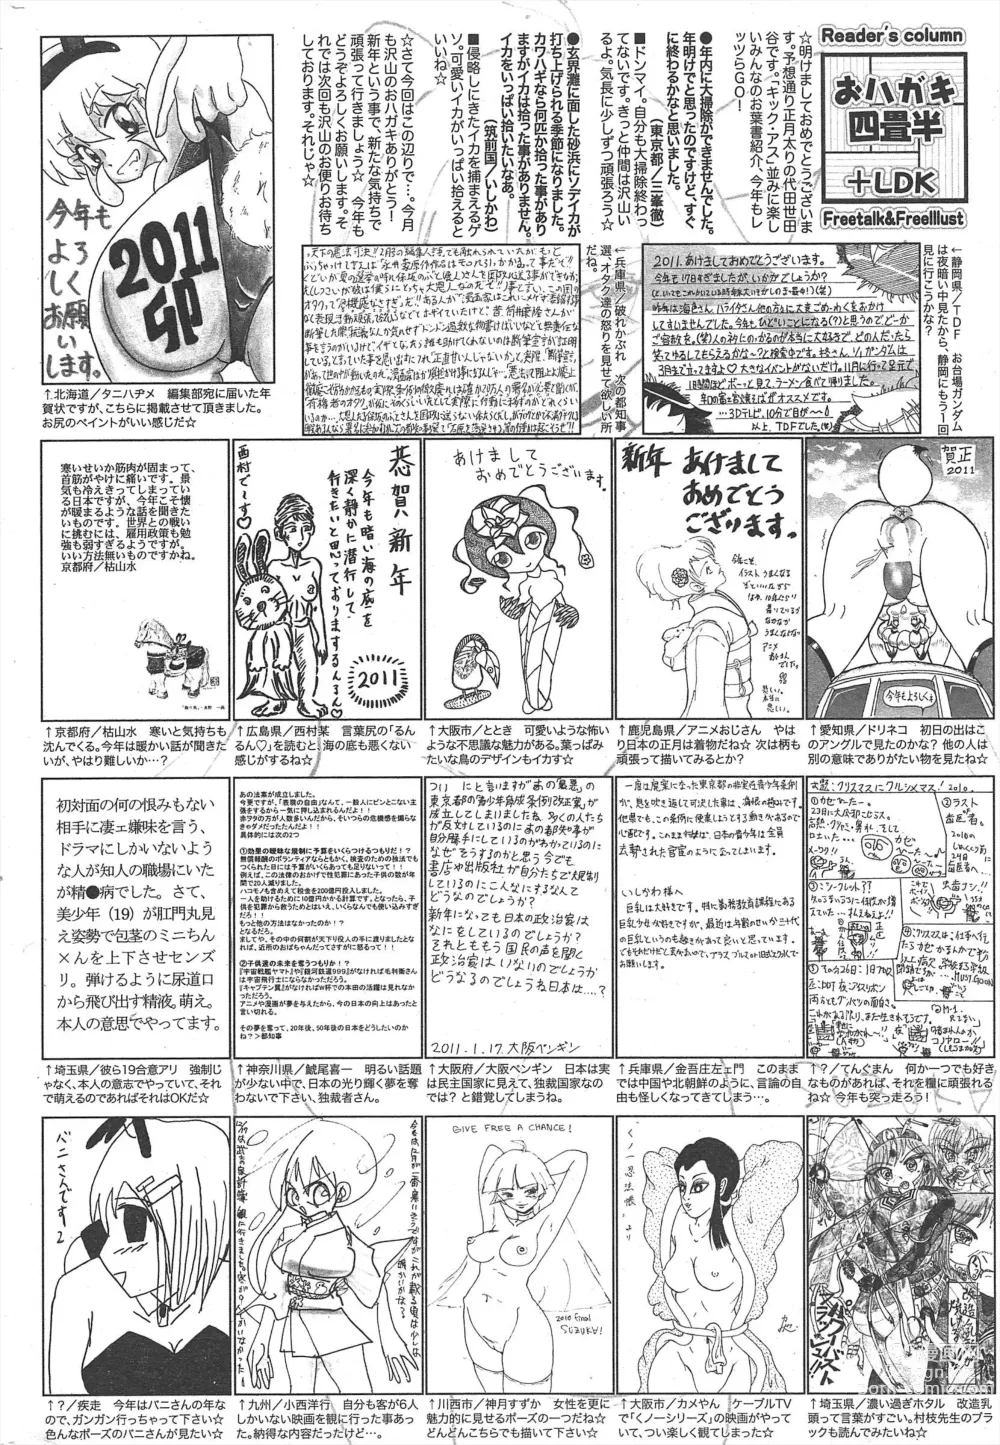 Page 258 of manga Manga Bangaichi 2011-03